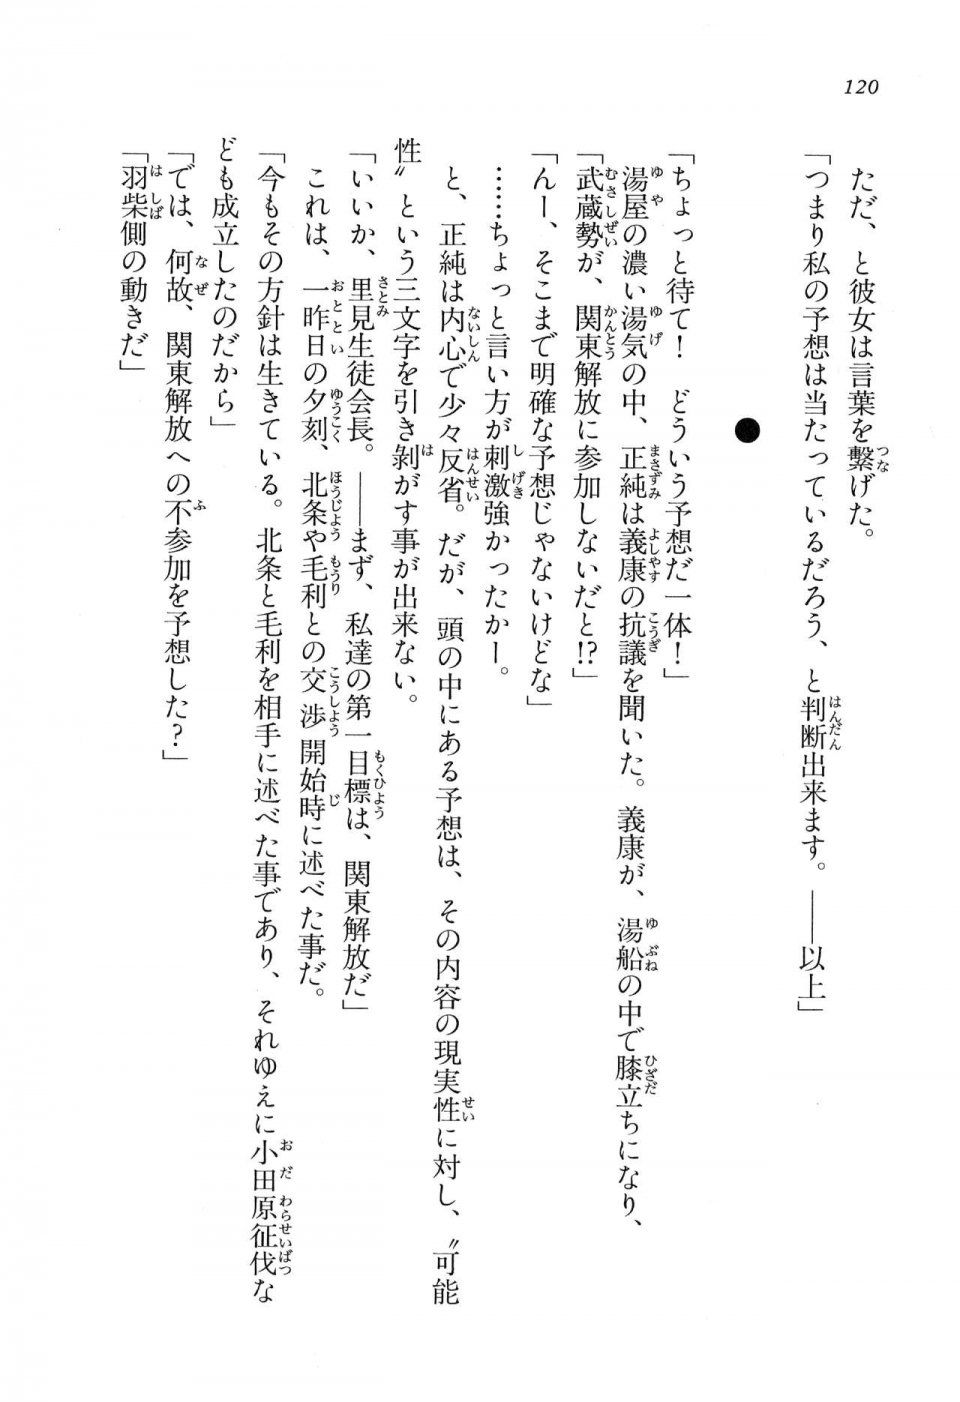 Kyoukai Senjou no Horizon LN Vol 16(7A) - Photo #120